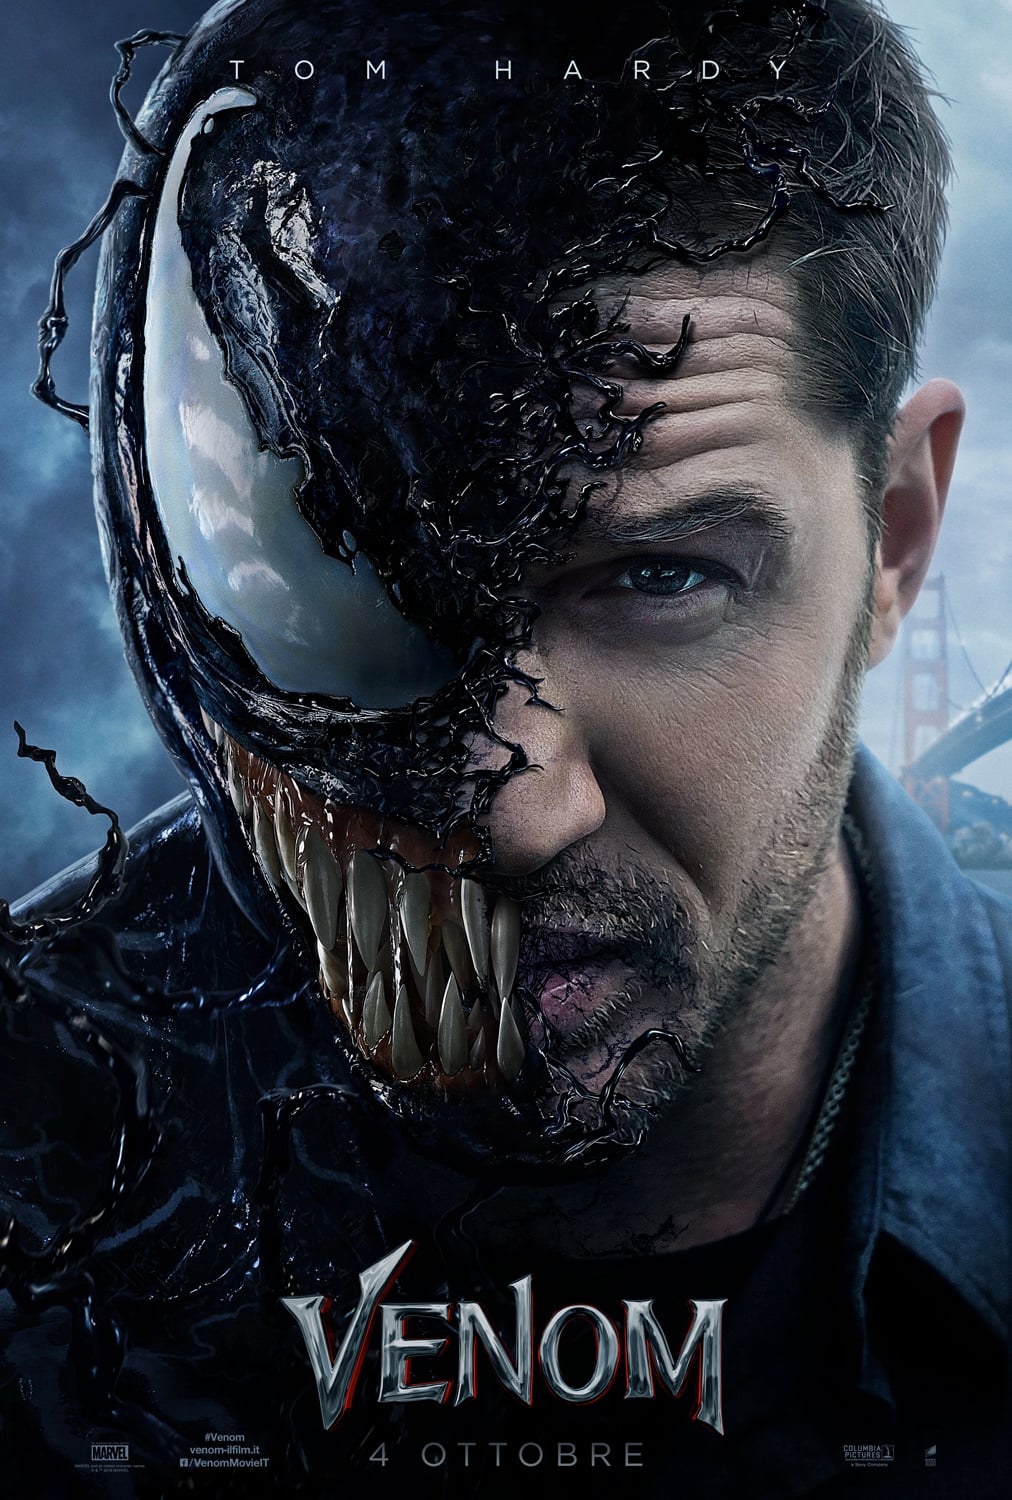 Plakat von "Venom"